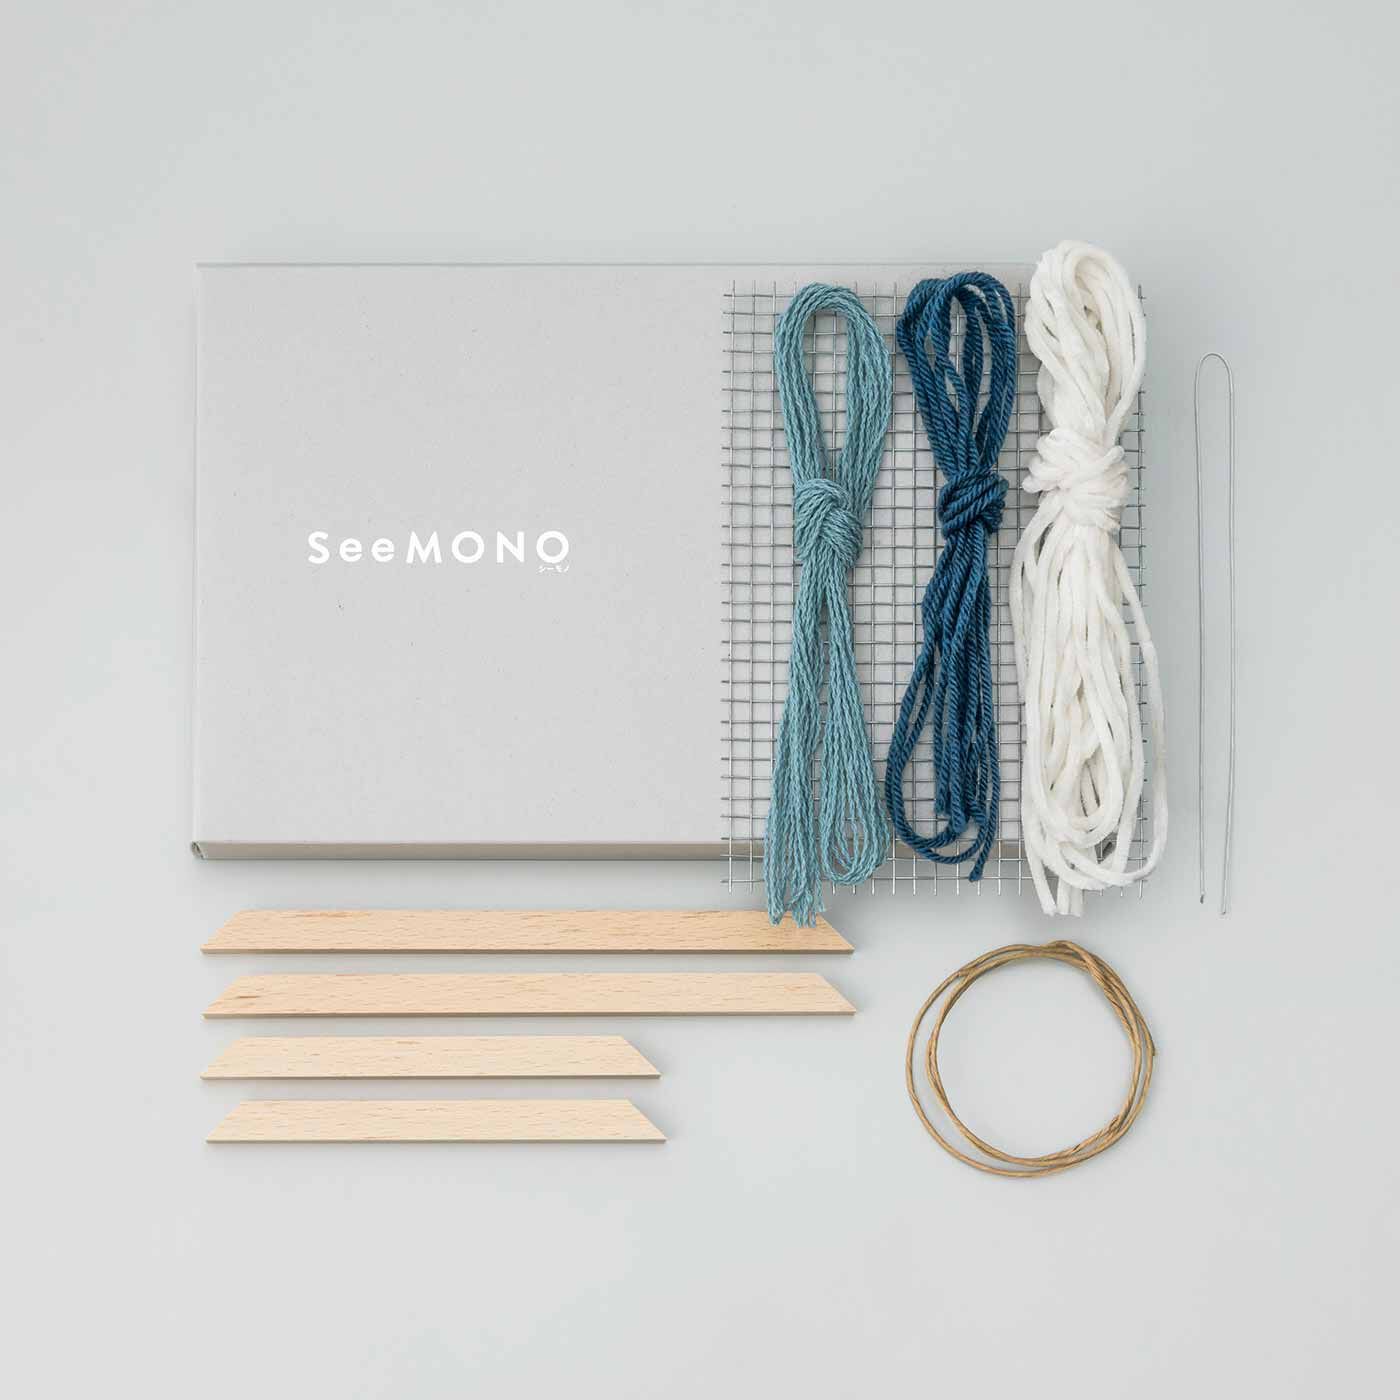 SeeMONO|メッシュに表情豊かな糸を織り込む ウィービングフレームキットの会|・1回のお届けキット例です。